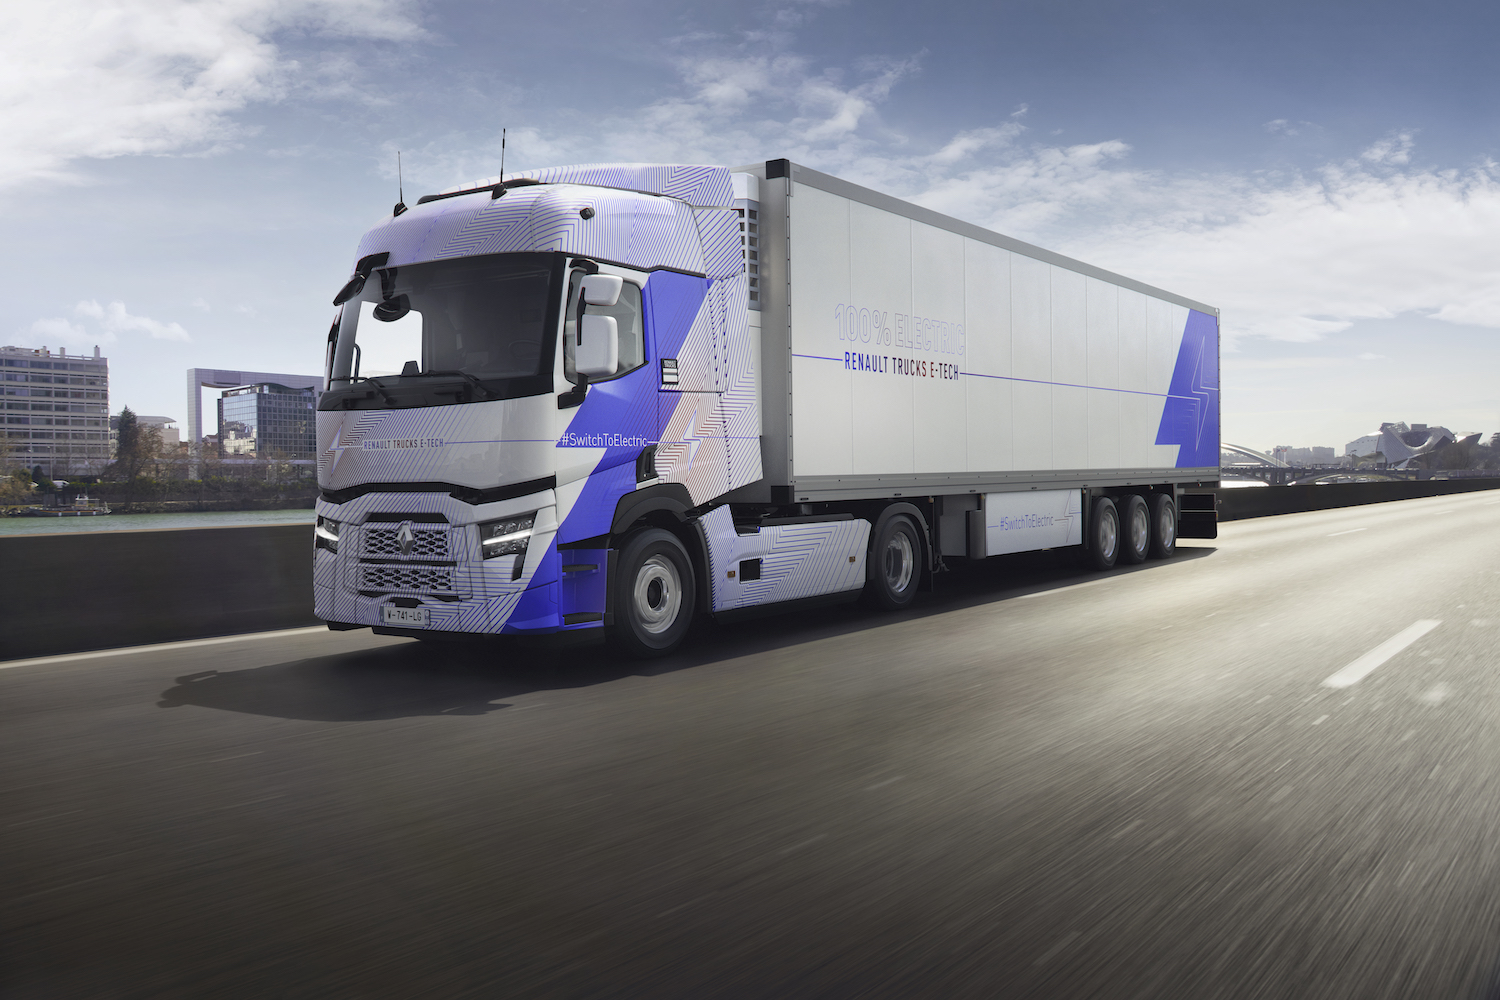 Risultati commerciali 2021: aumento significativo per Renault Trucks